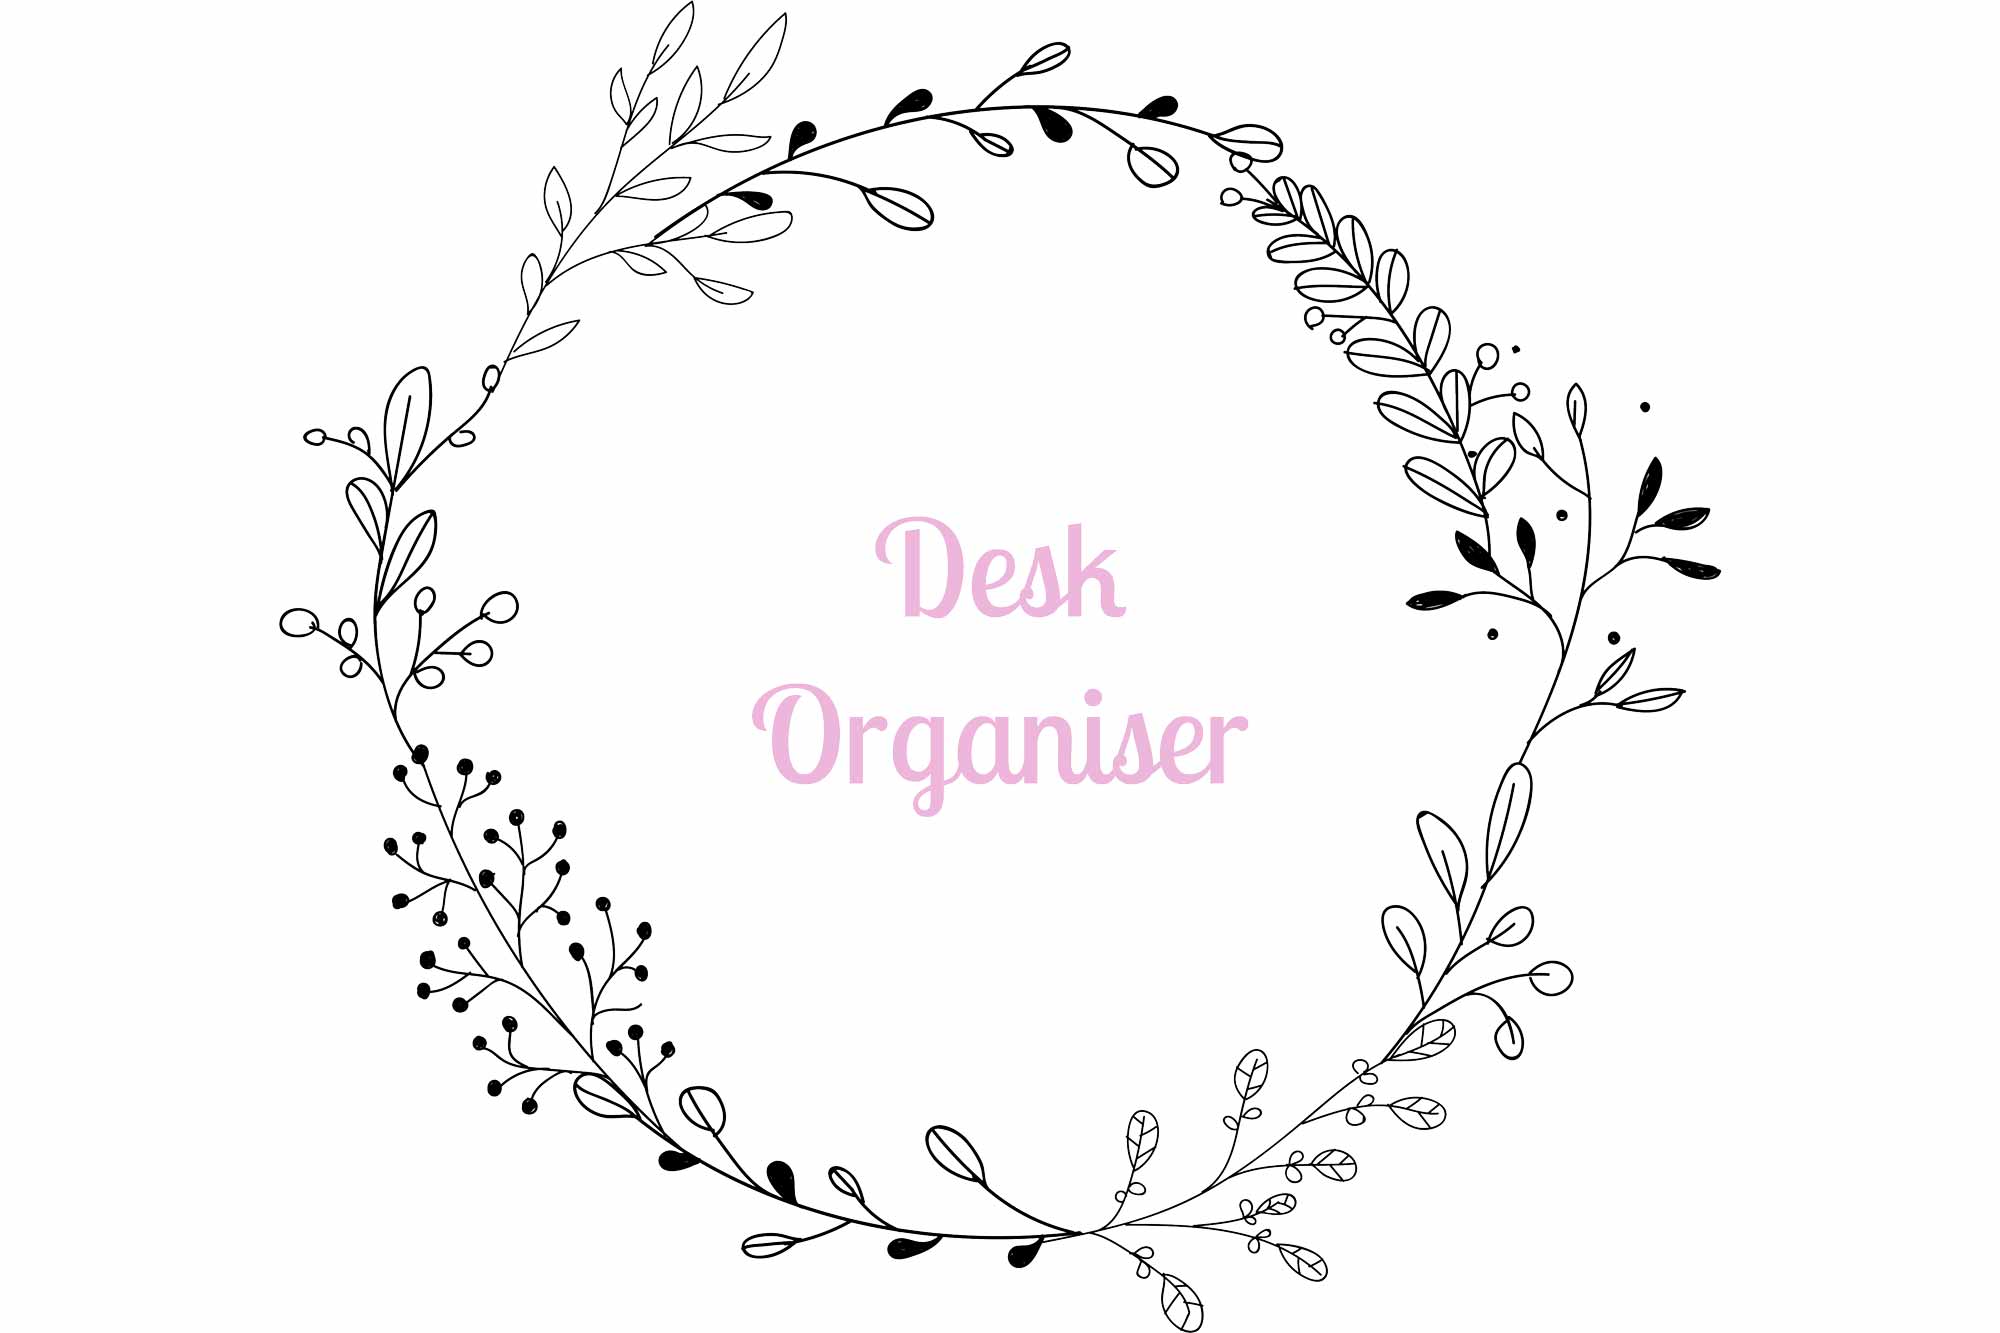 Desk Organiser